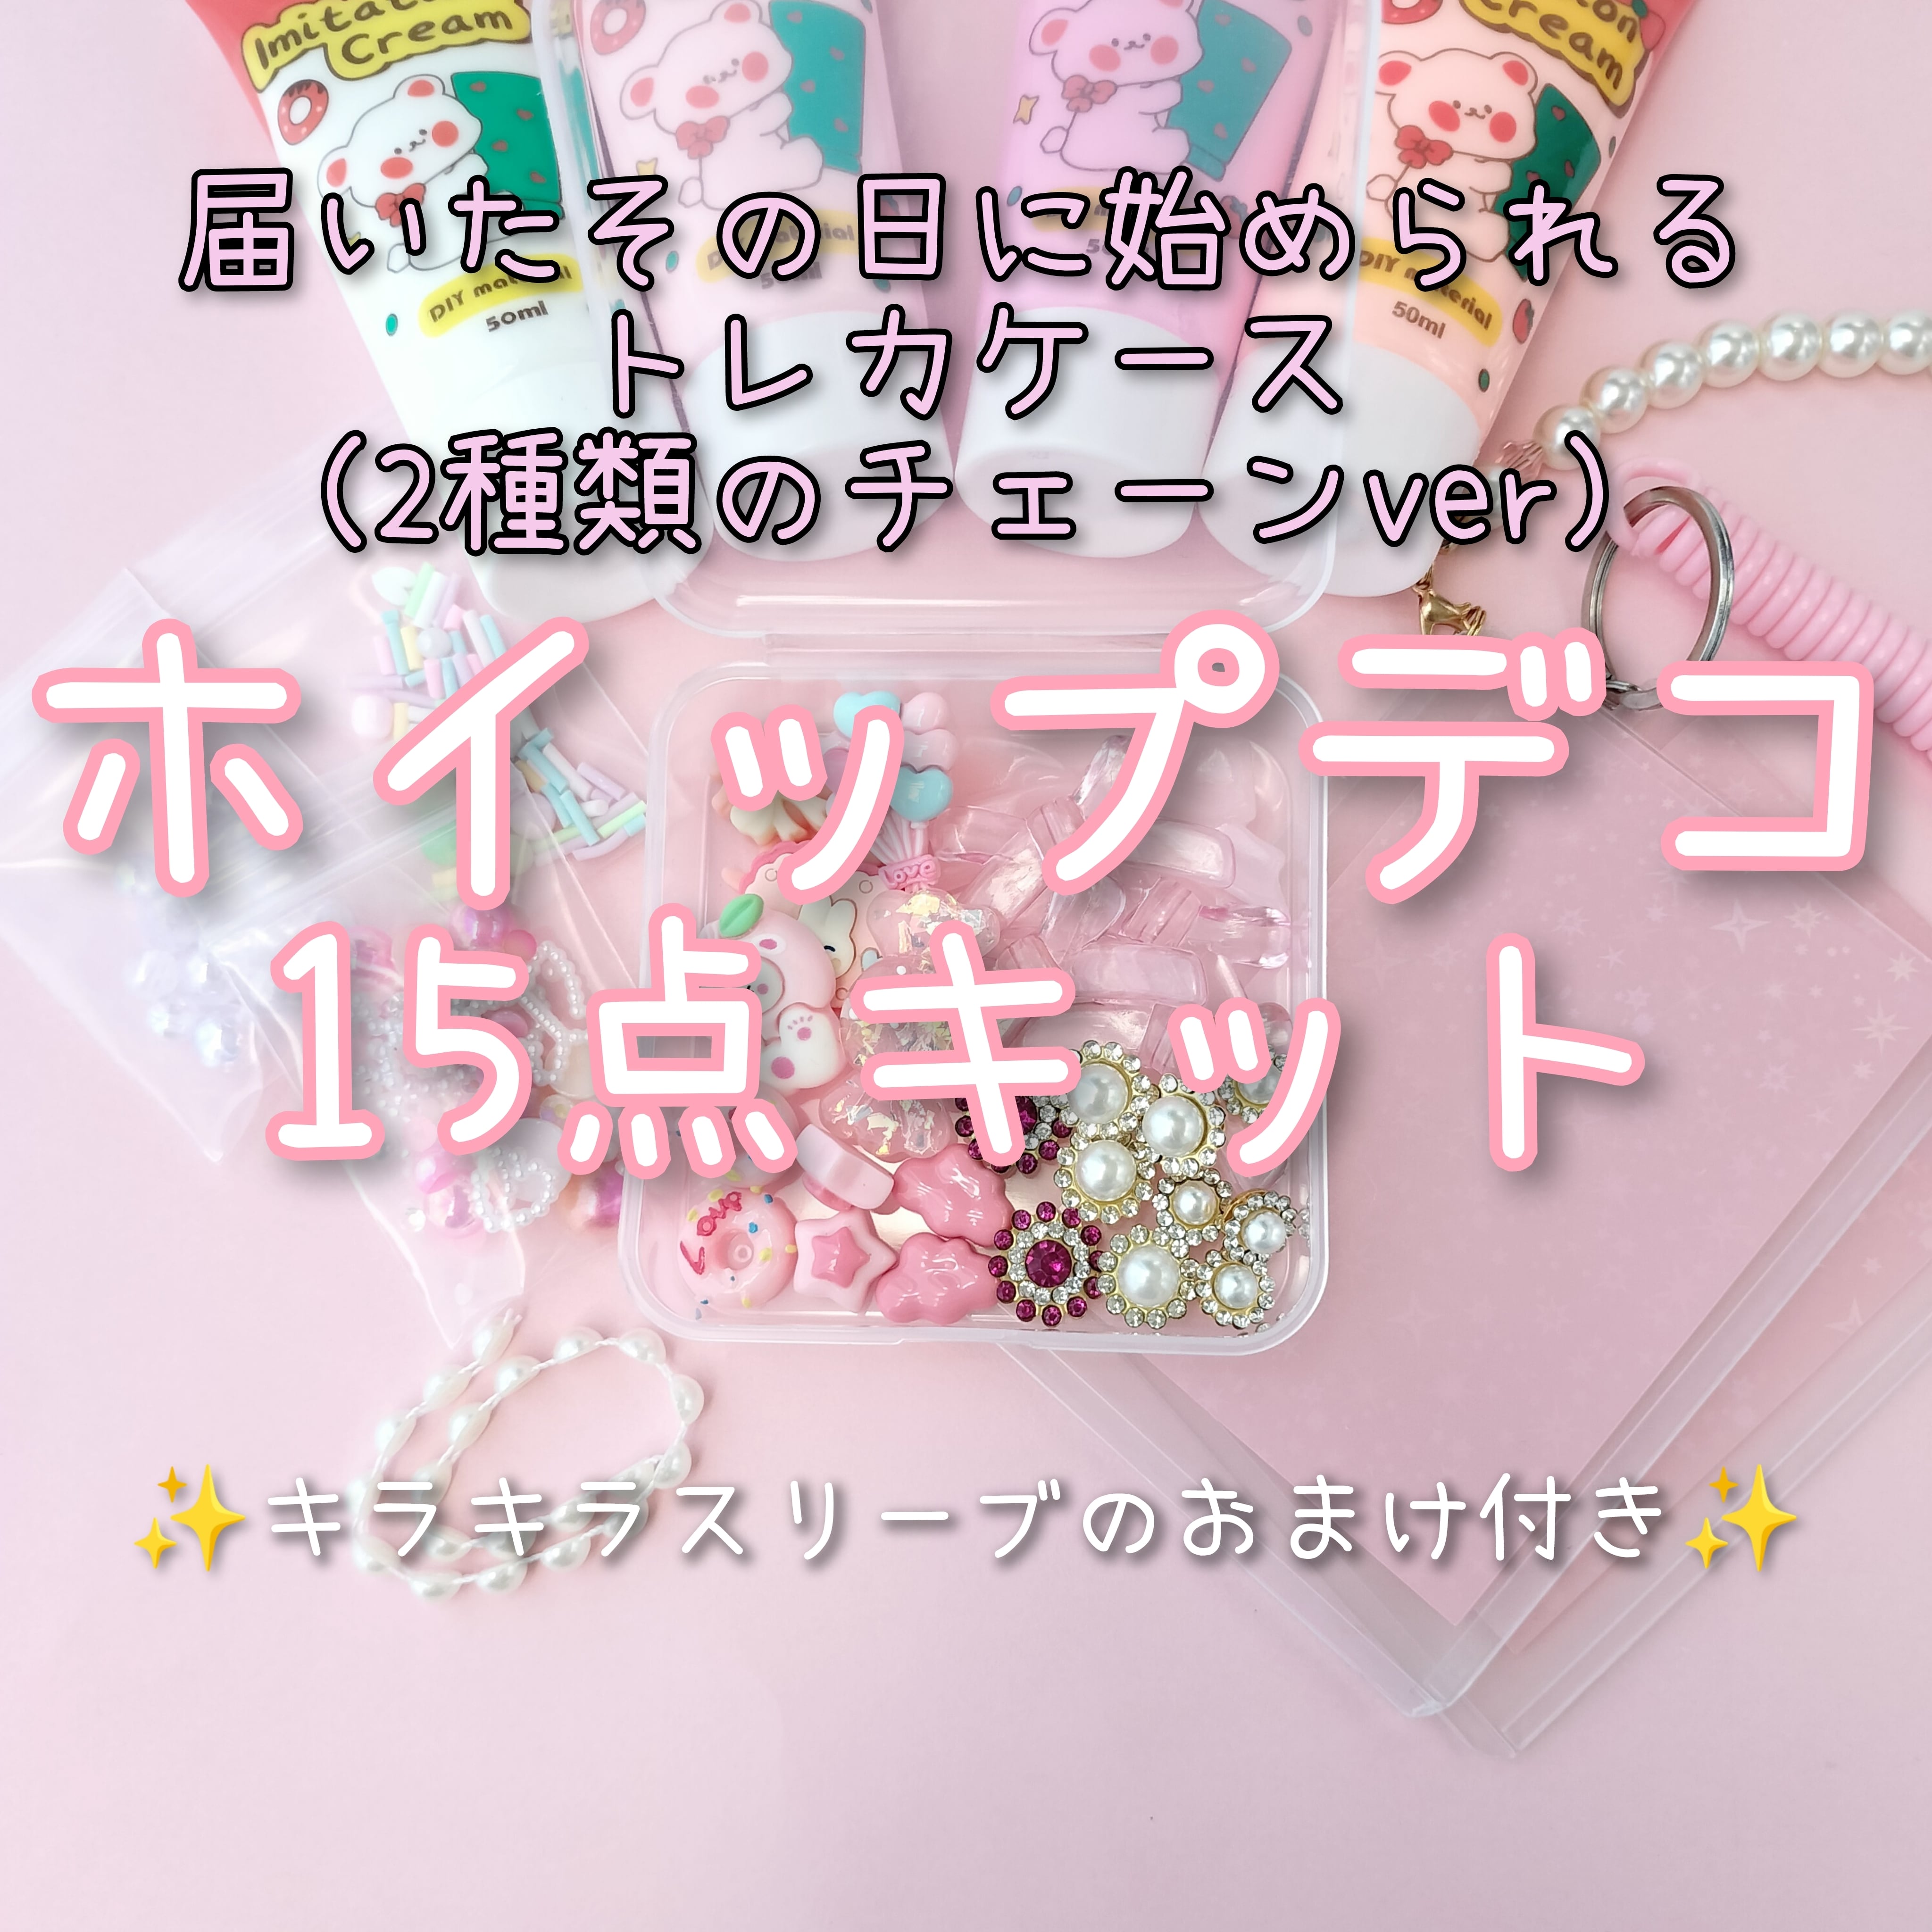 【ピンク·チェーンver】硬質カードケースホイップデコ15点キット